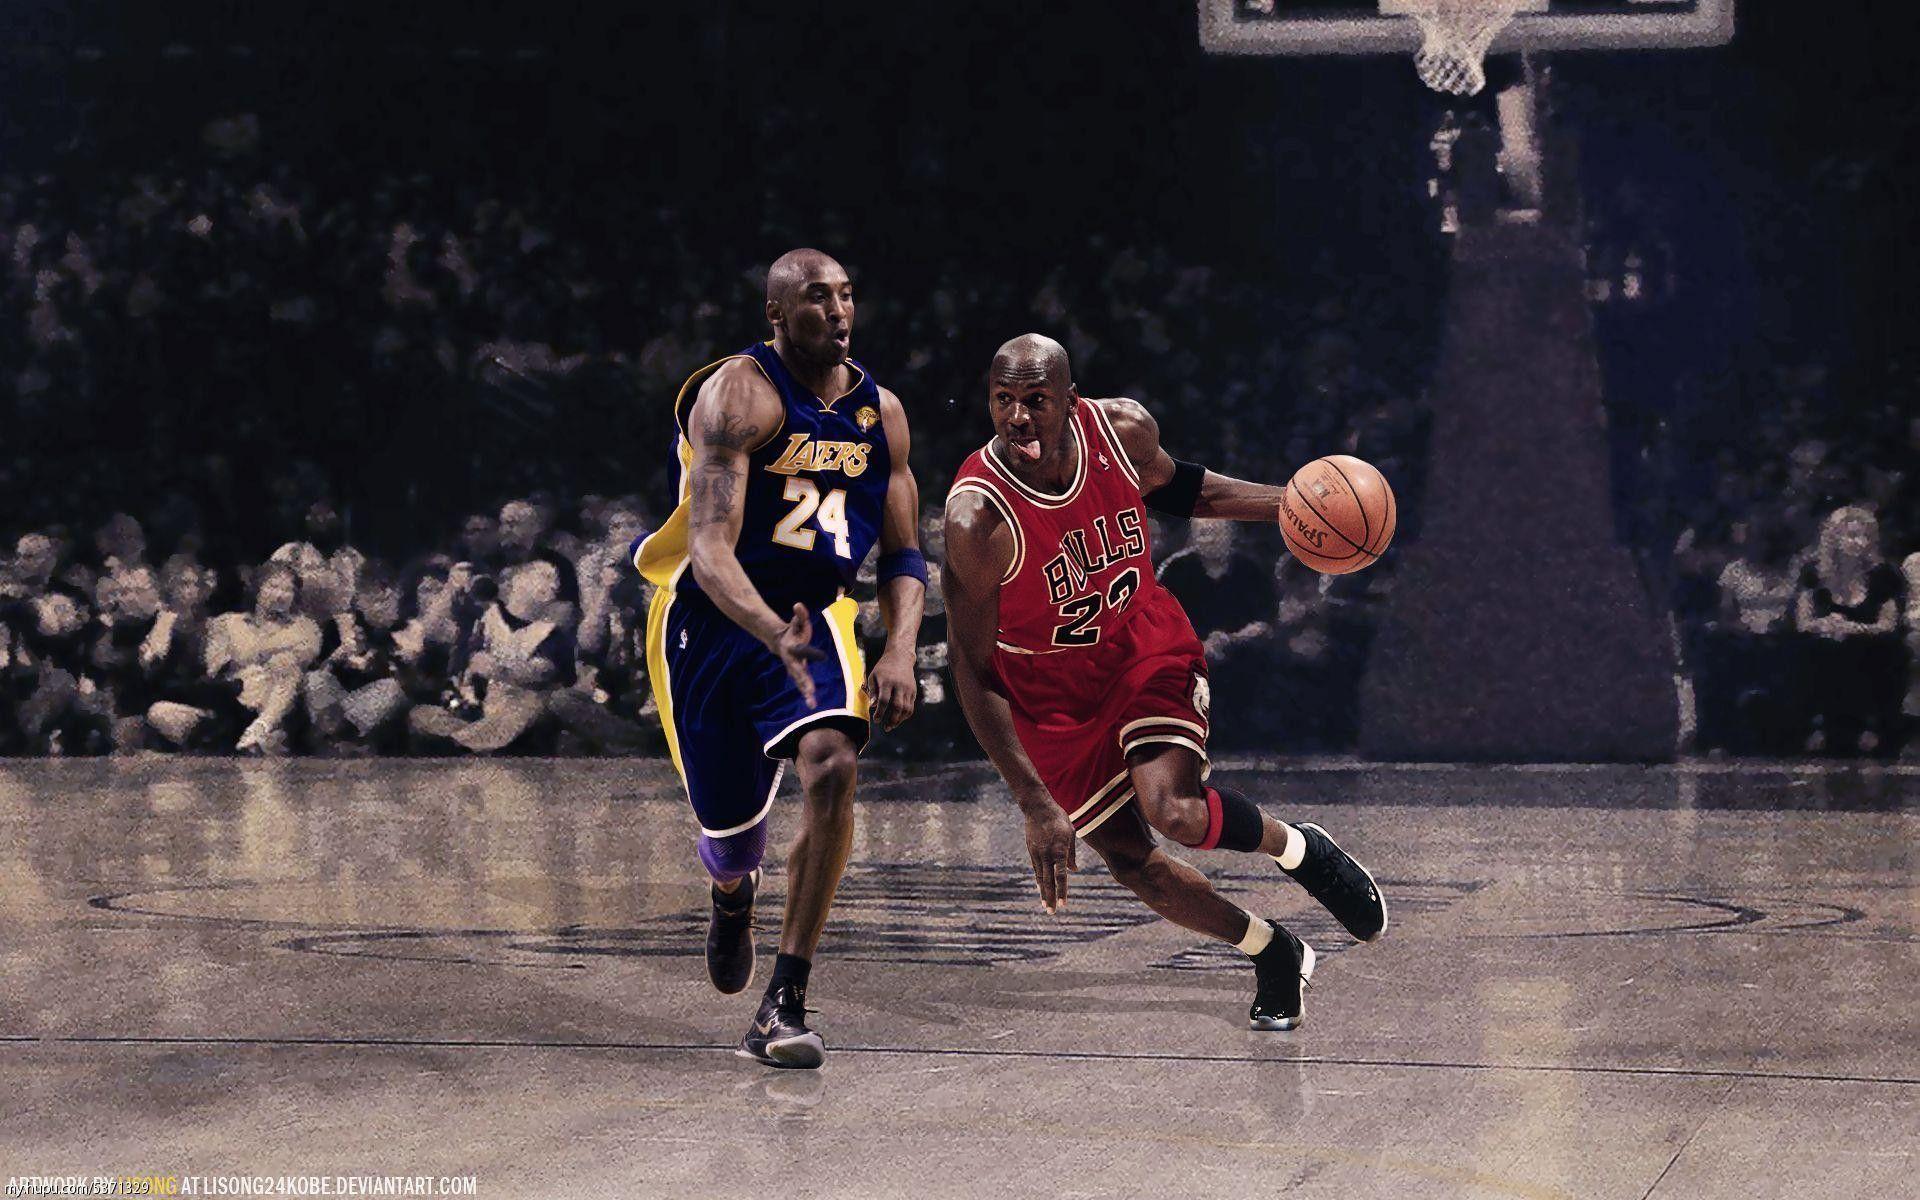 Kobe vs Jordan Wallpaper HD